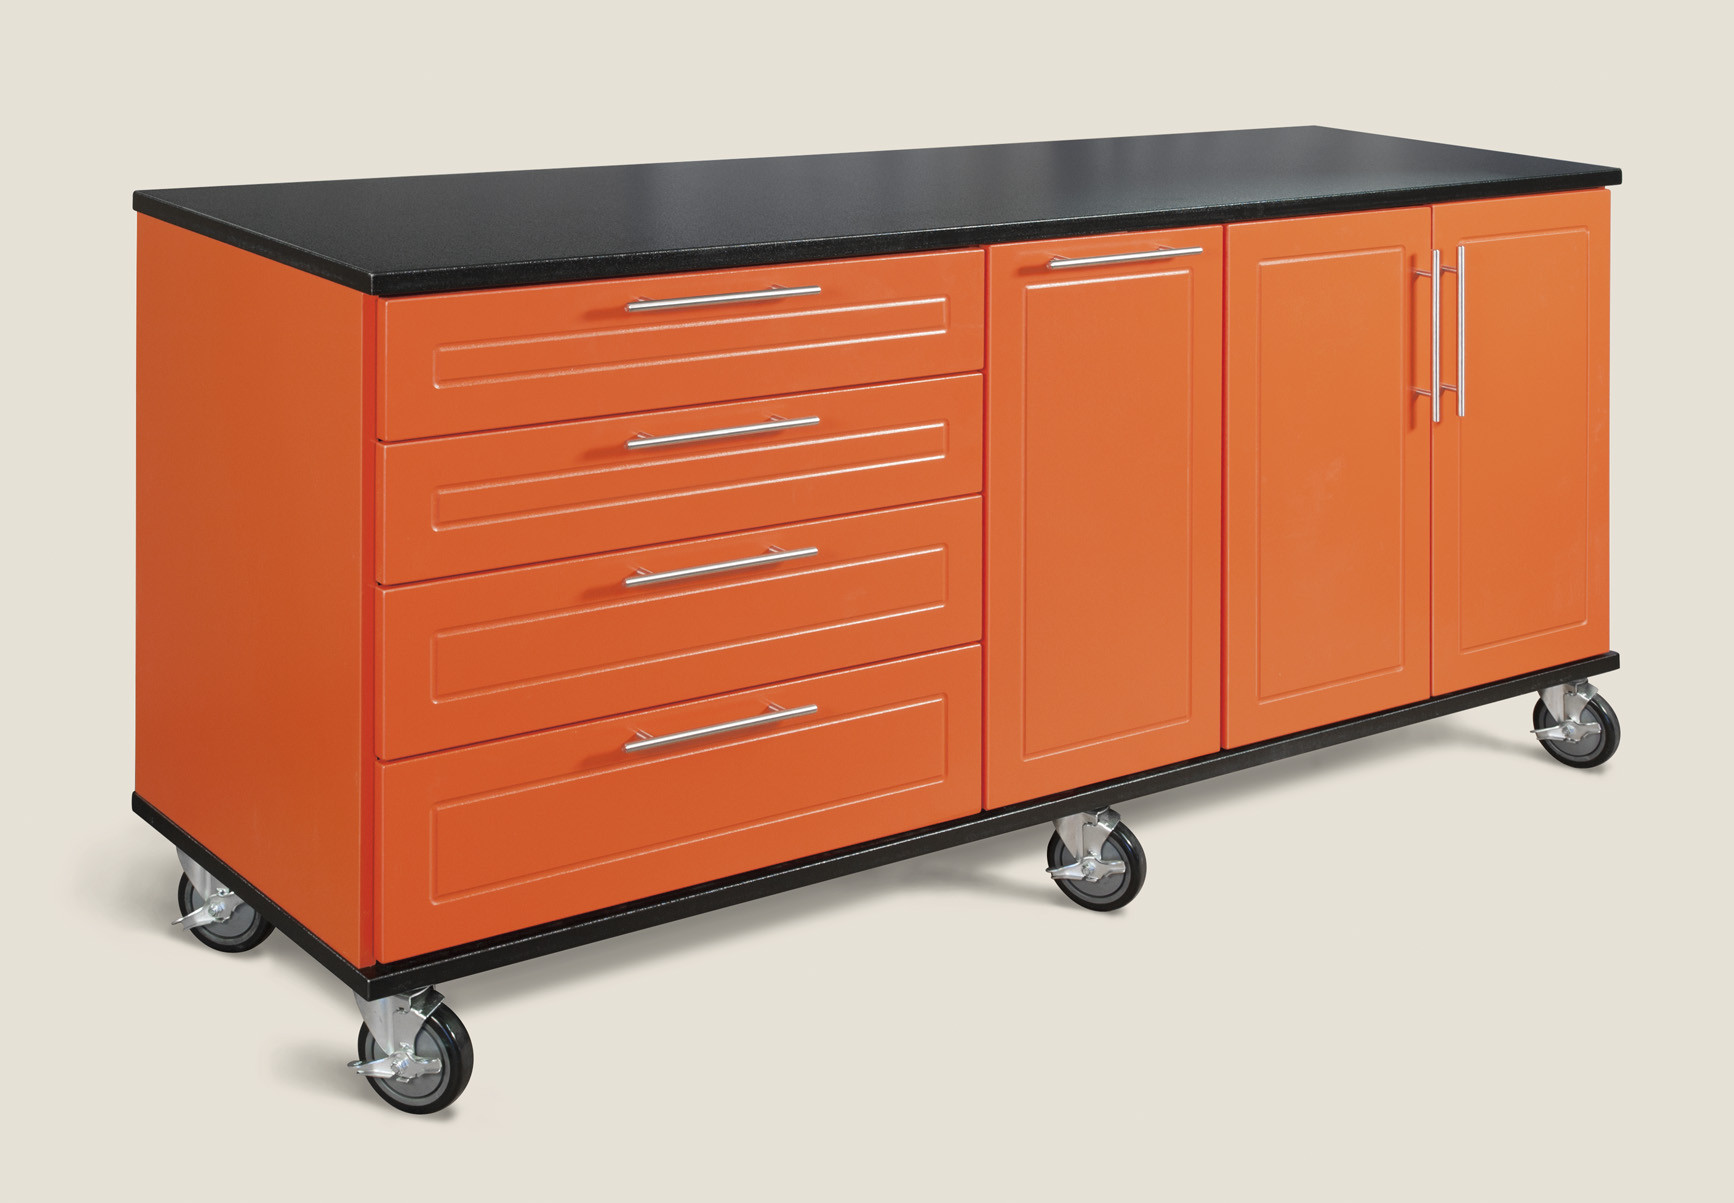 Best ideas about Garage Workbench With Storage
. Save or Pin Coastal Carolinas Garage Storage Experts to fer RedLine Now.